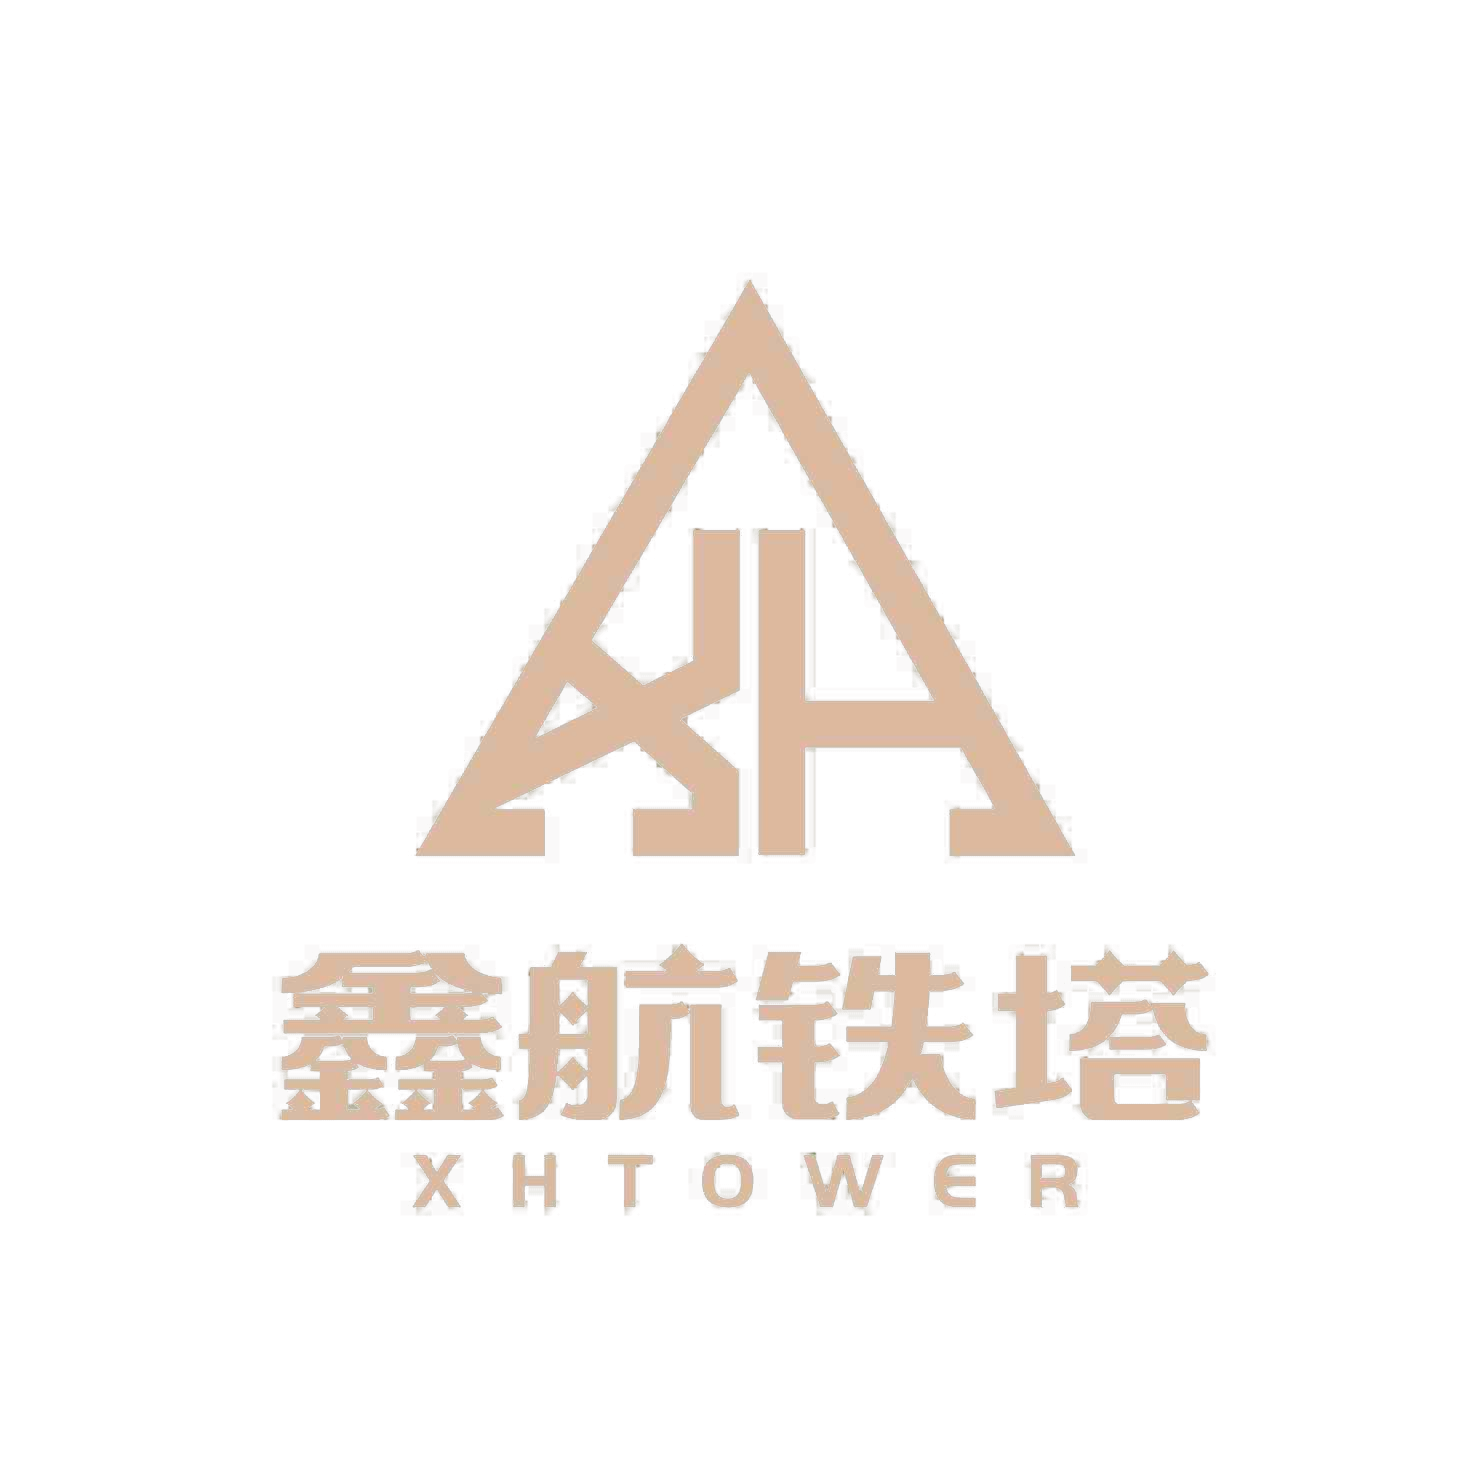 Xinhang Tower Technology Co.,Ltd.